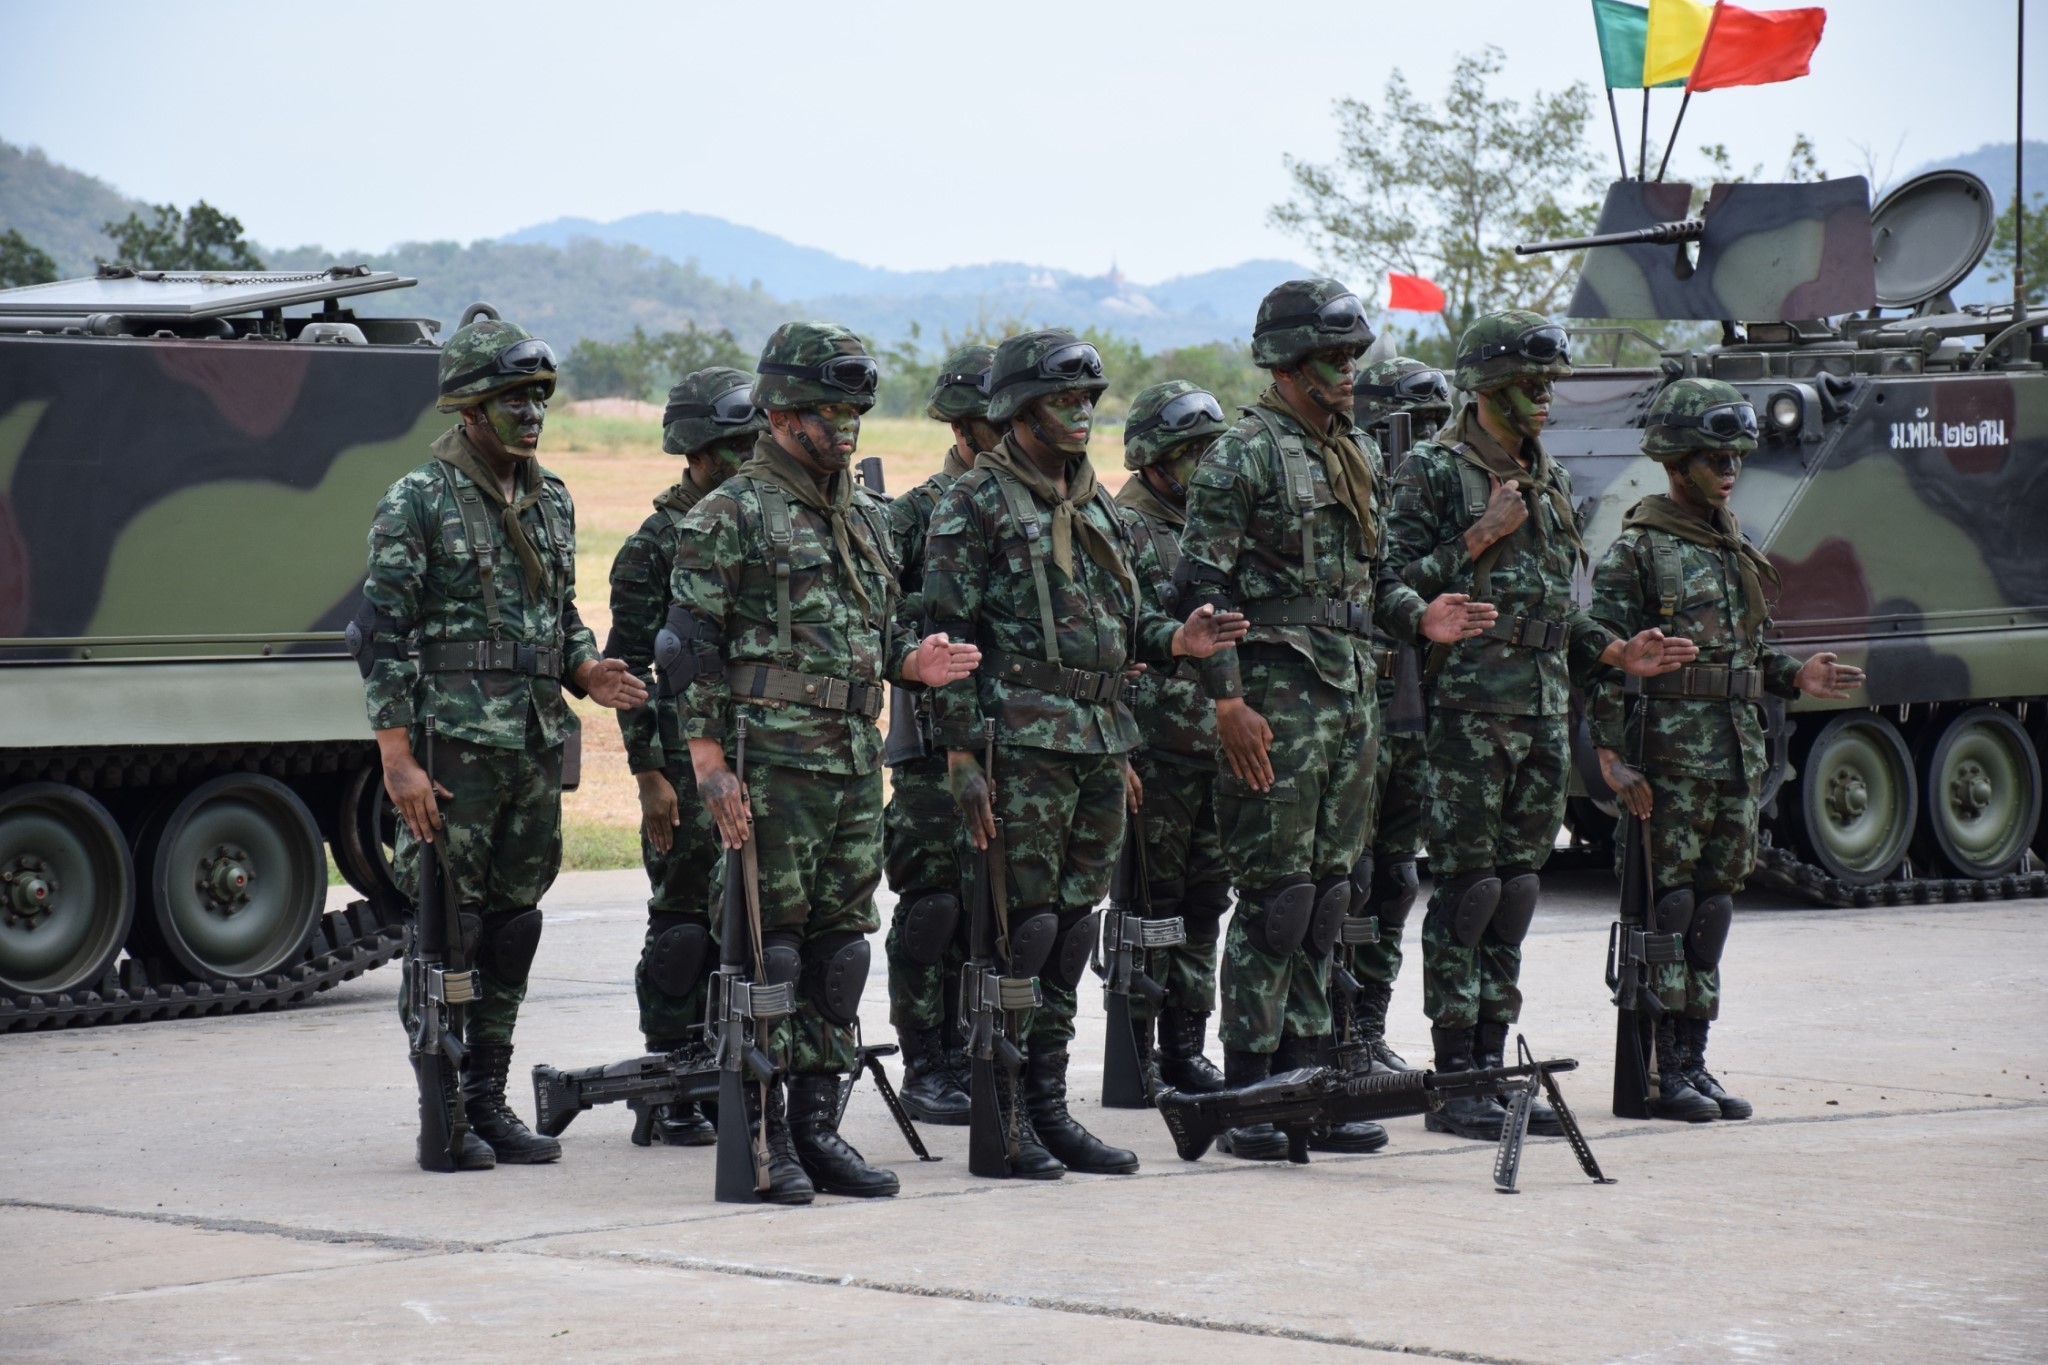 泰国陆军装备的英制fv101蝎式装甲侦察车泰国采购的美制黄貂鱼轻型